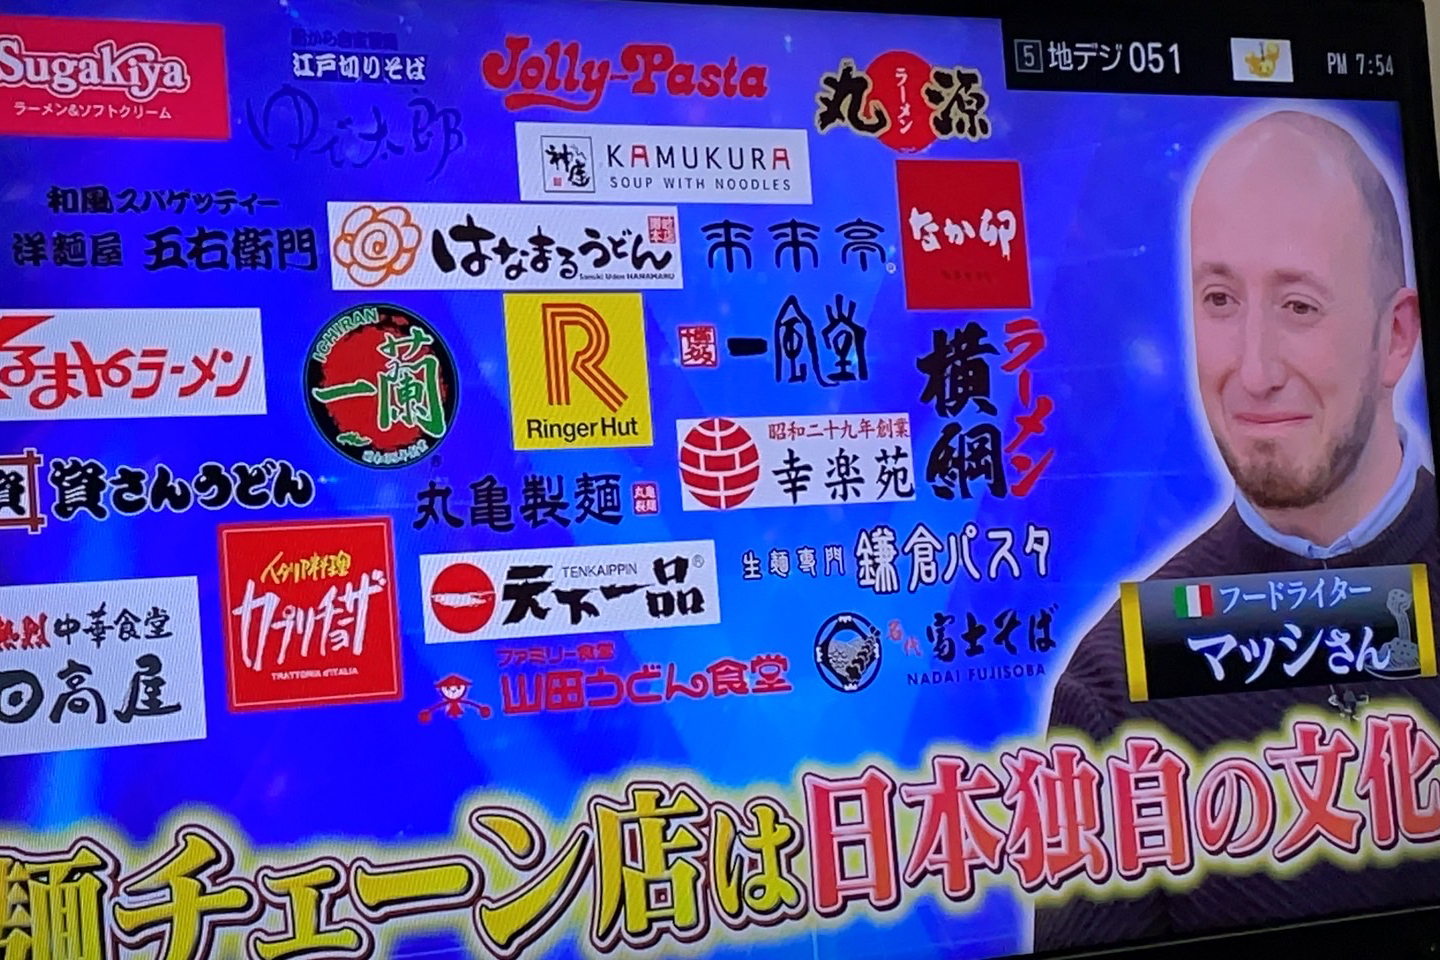 【テレビ朝日】「麺チェーン店ランキング」